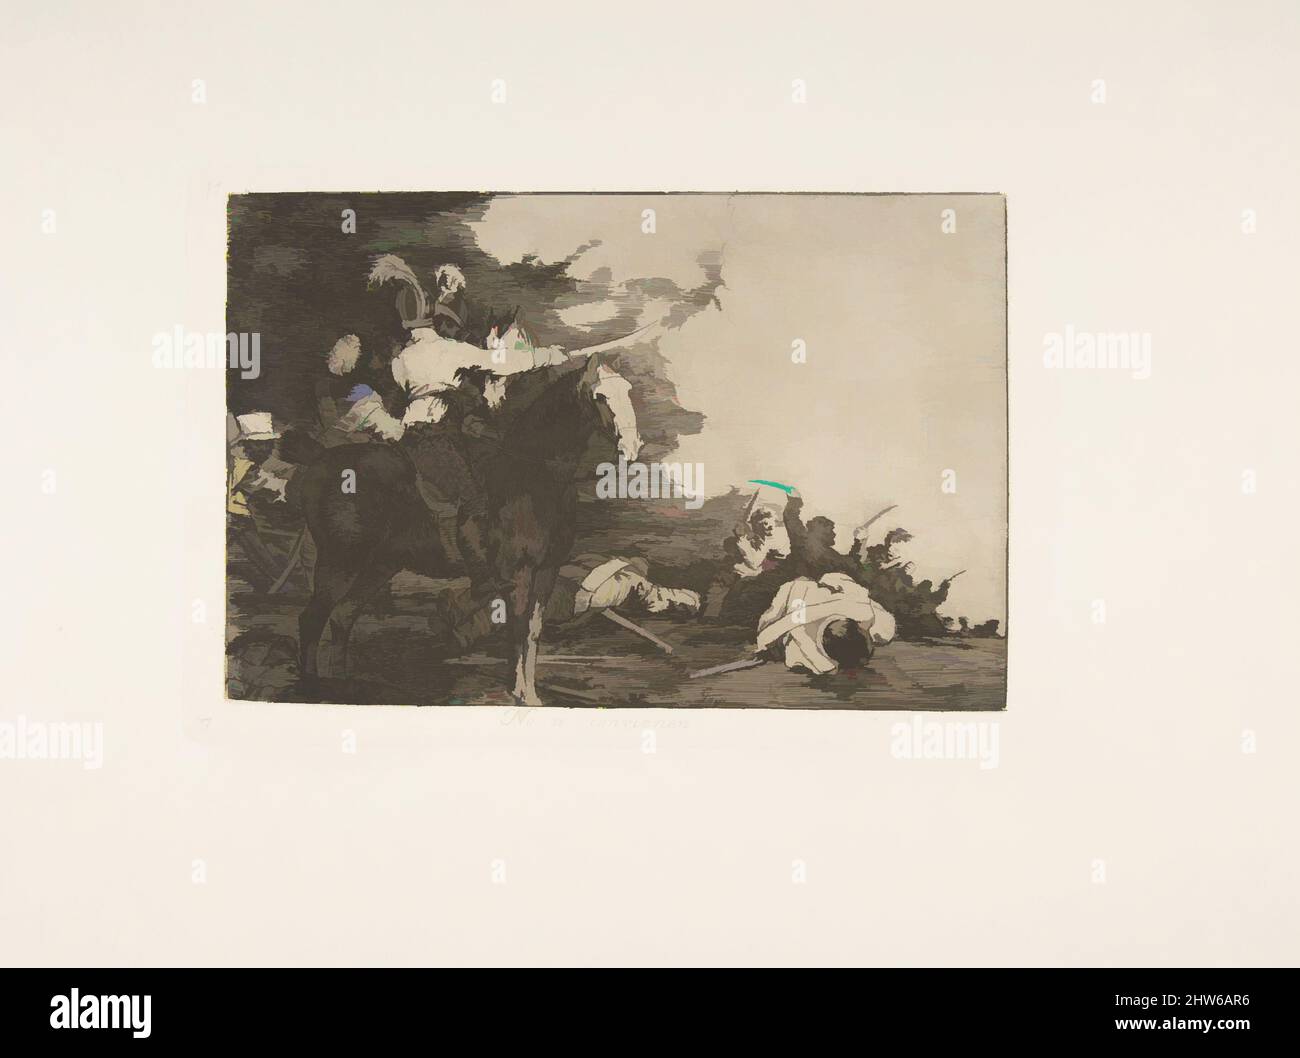 Art inspiré par la planche 17 de 'les désastres de la guerre' (Los Desastres de la Guerra): 'Ils ne sont pas d'accord.' (Non se convivialité.), 1810 (publié en 1863), Etching, Drypoint, burin et burnisher, Plaque : 5 11/16 × 8 7/16 po (14,5 × 21,5 cm), Prints, Goya (Francisco de Goya y Lucientes) (espagnol, oeuvres classiques modernisées par Artotop avec une touche de modernité. Formes, couleur et valeur, impact visuel accrocheur sur l'art émotions par la liberté d'œuvres d'art d'une manière contemporaine. Un message intemporel qui cherche une nouvelle direction créative. Artistes qui se tournent vers le support numérique et créent le NFT Artotop Banque D'Images